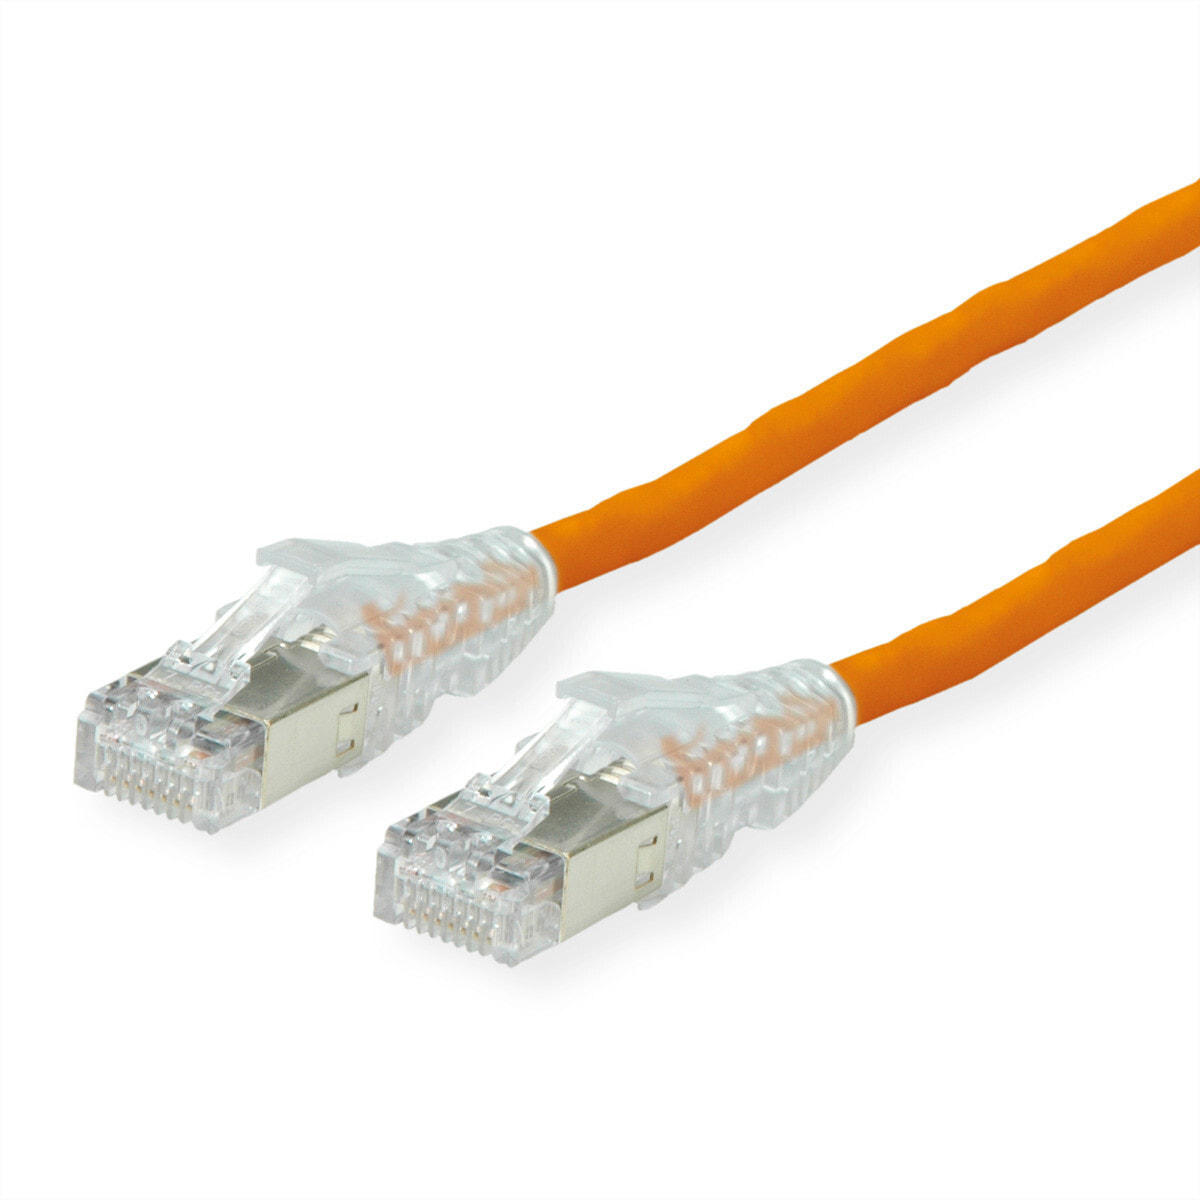 ROTRONIC-SECOMP KAT.6A H AMP v2 orange 15m Dätwyler CU 7702 flex LS0H v2 - Cable - Network